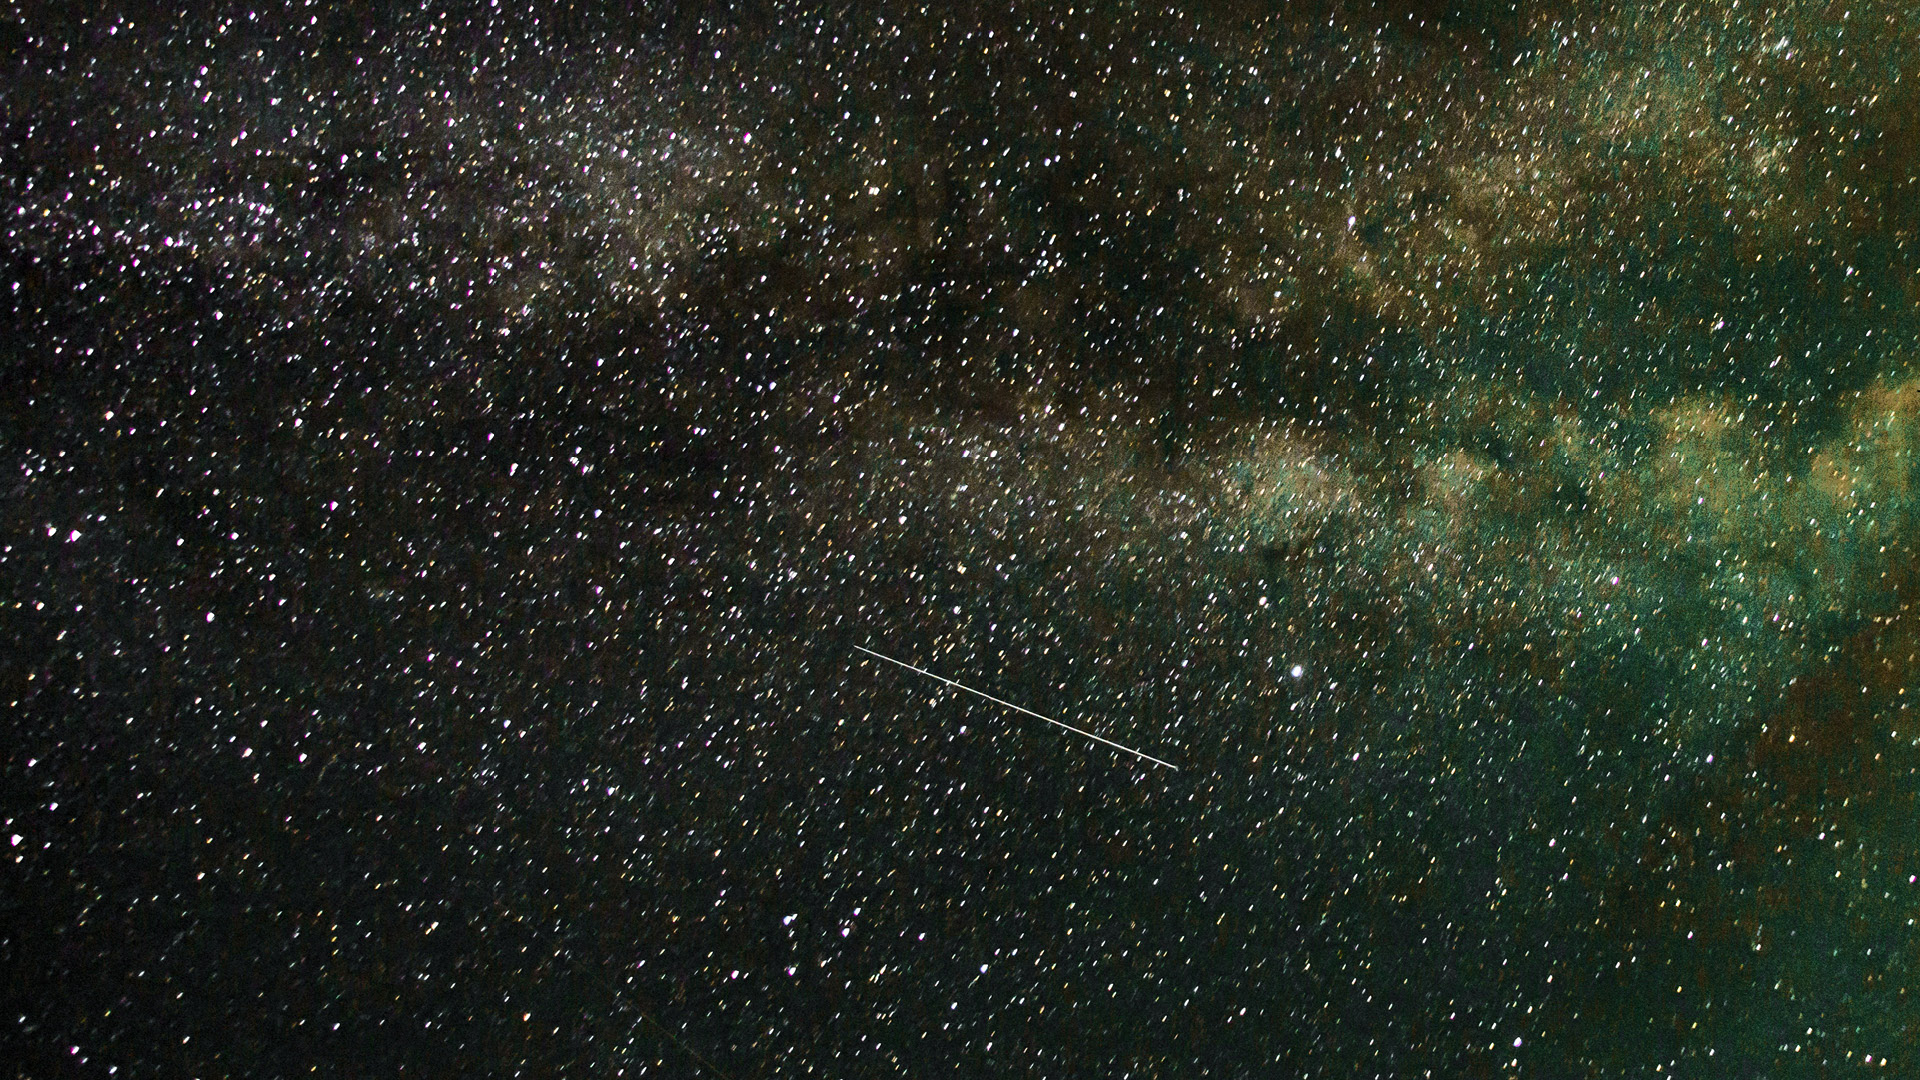 Soirée astronomique: Nuit des étoiles filant des Perséides